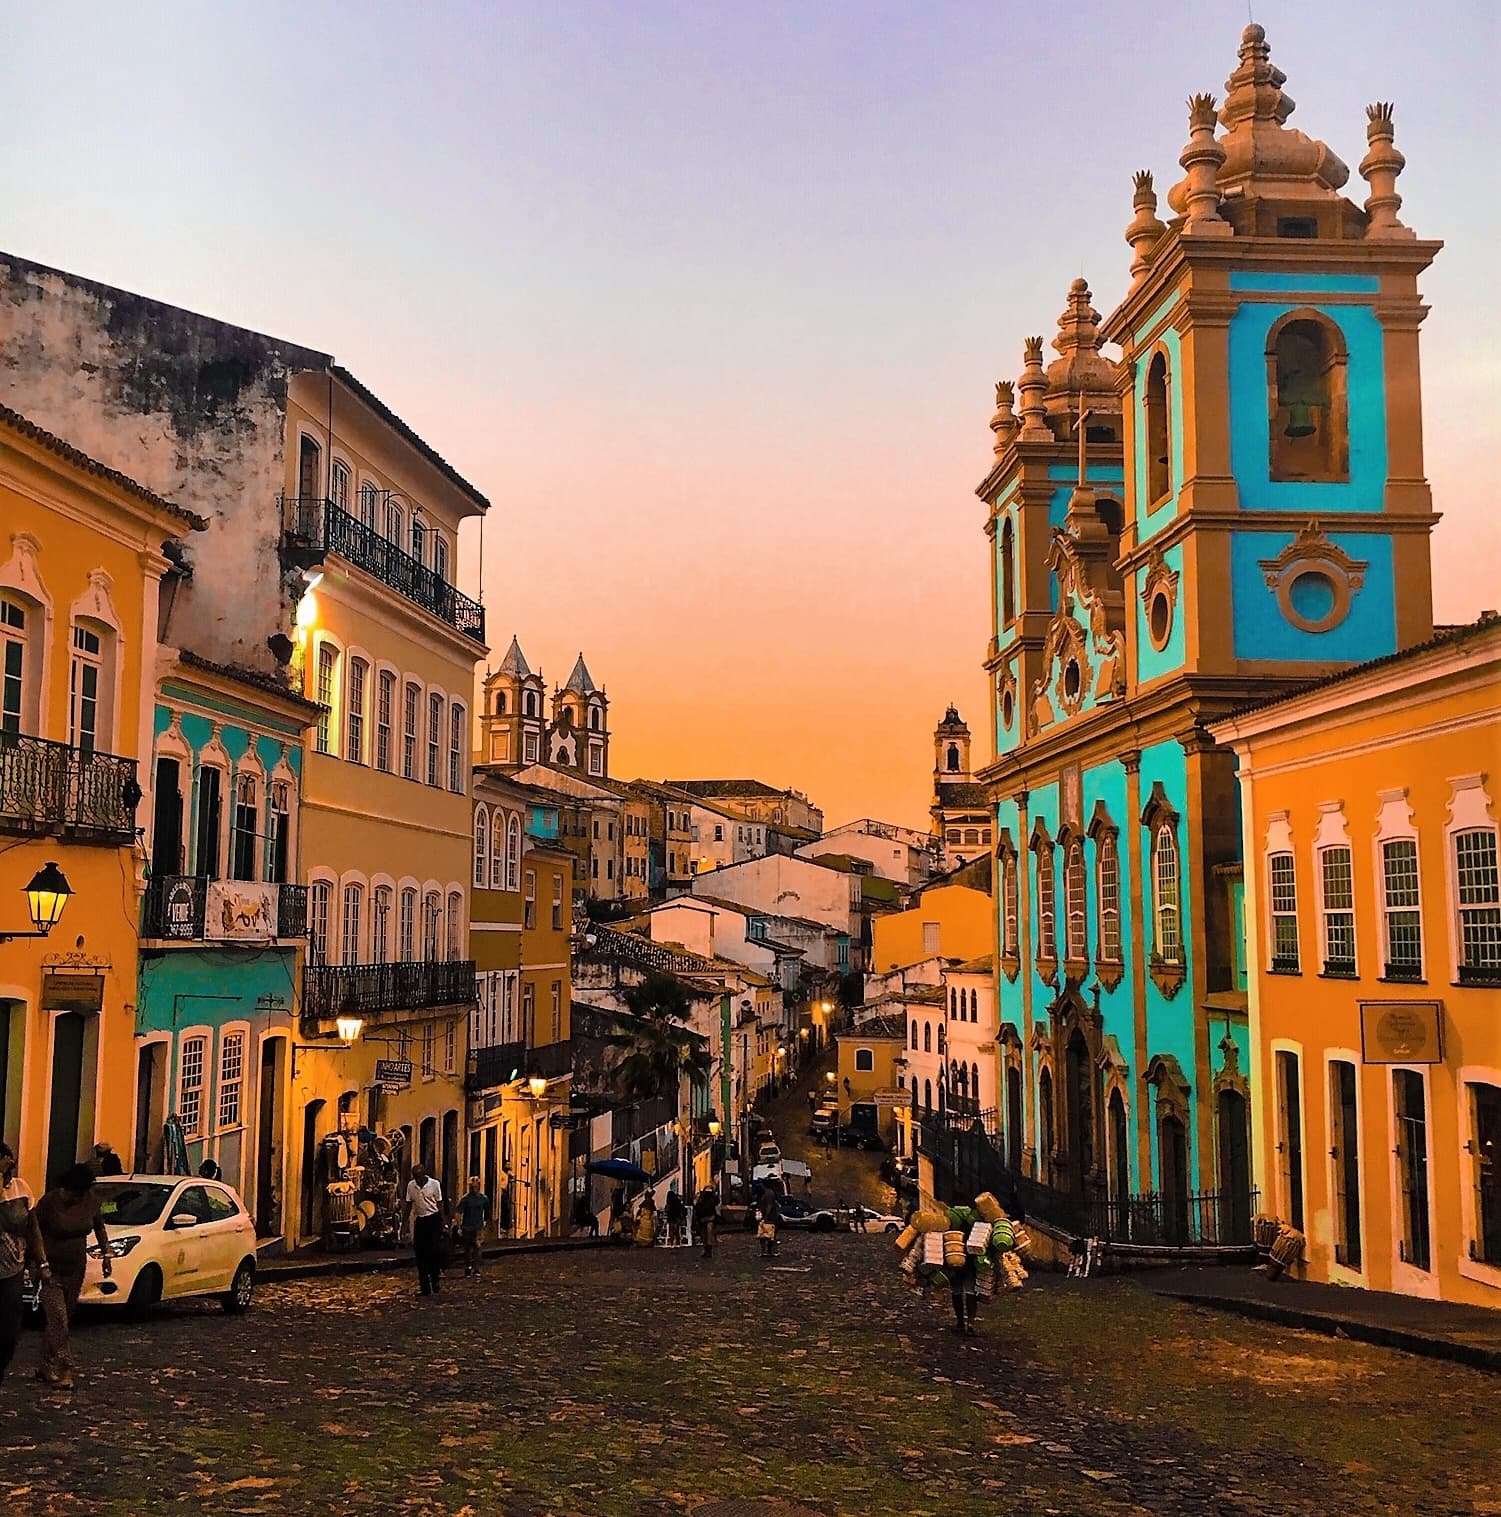 Altstadt Pelourinho in Salvador